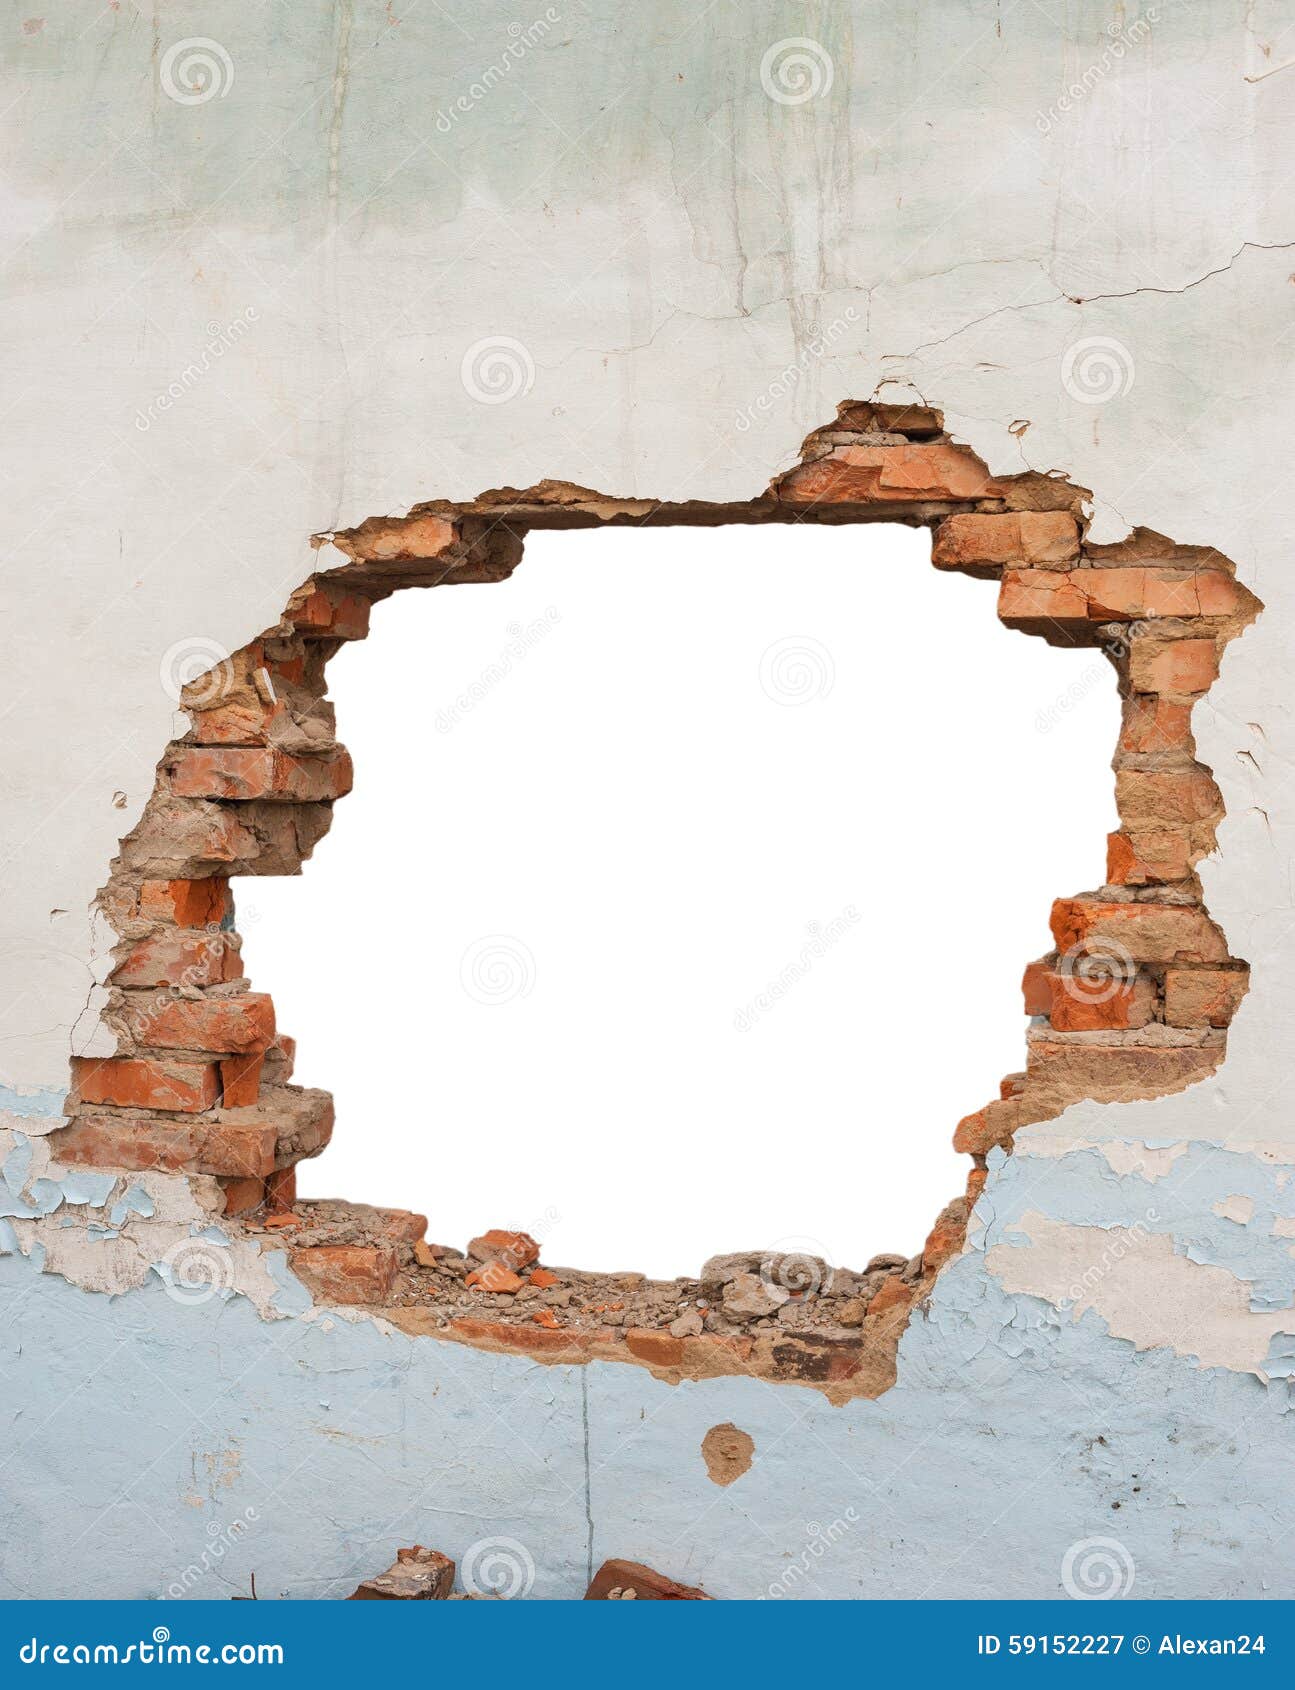 Hole brick wall stock image. Image of exterior, damage - 59152227